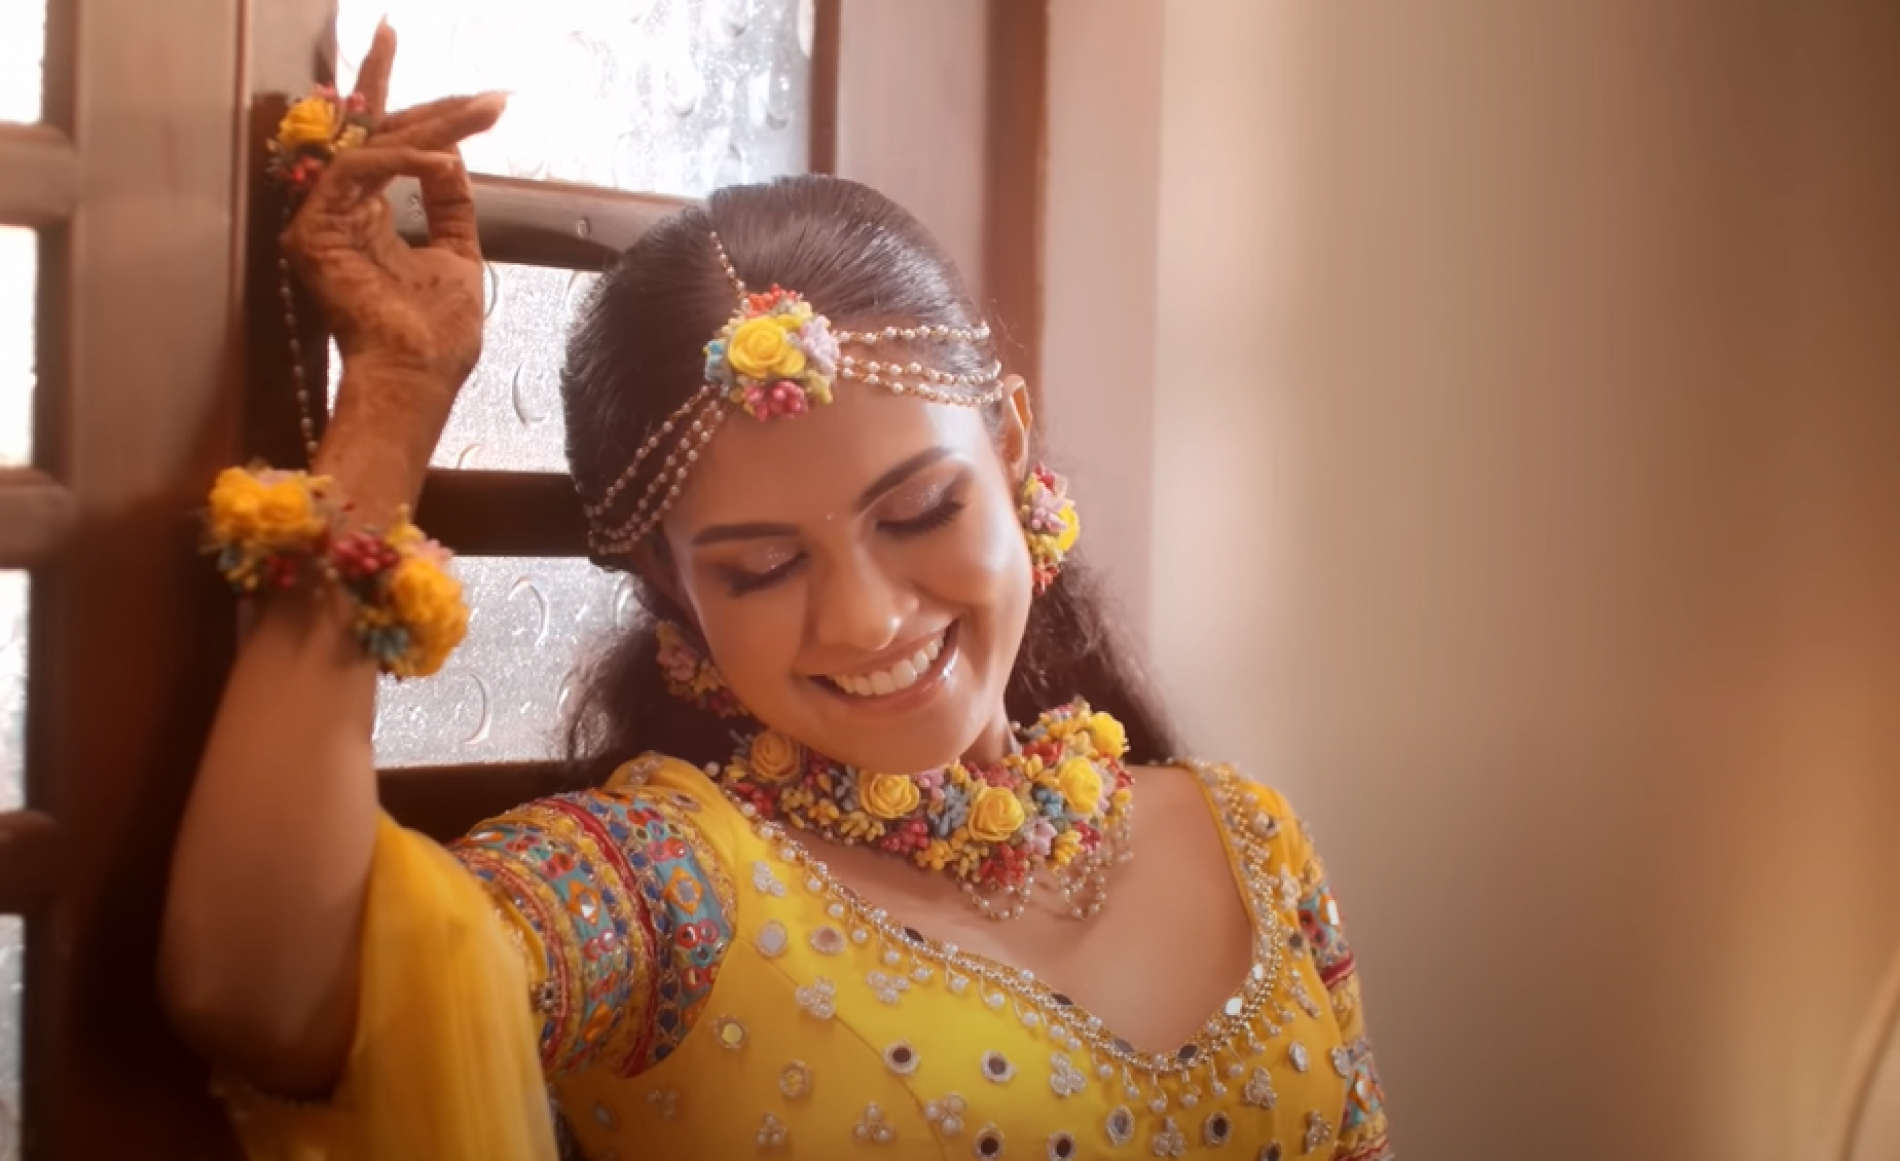 New Music | Opada (ඔපදා) – Kanchana Anuradhi Official Music Video